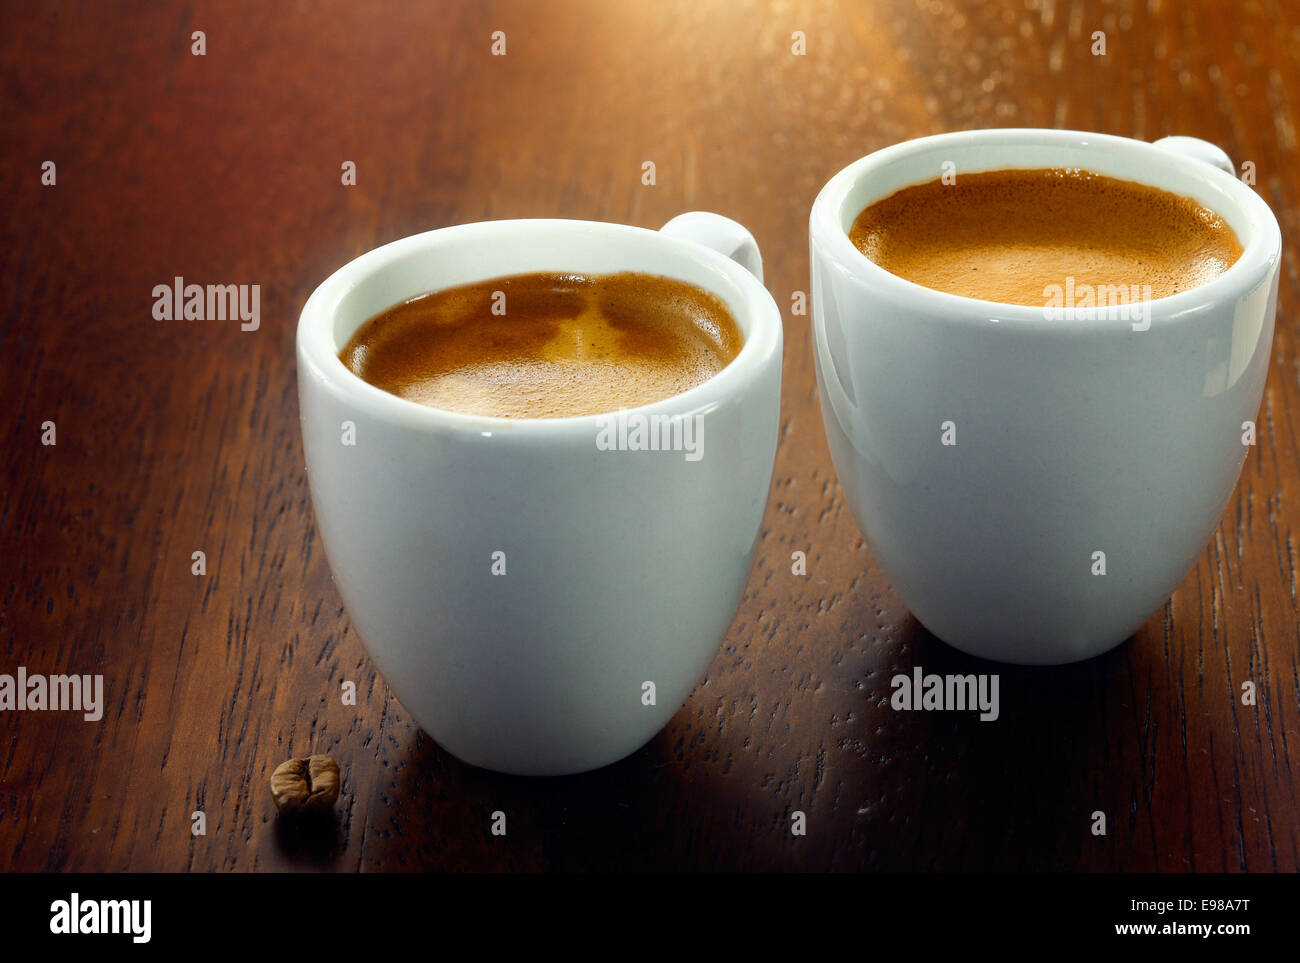 Deux cafés espresso dans de petites coupelles, blanc avec un seul grain de café posé sur le fond en bois Banque D'Images